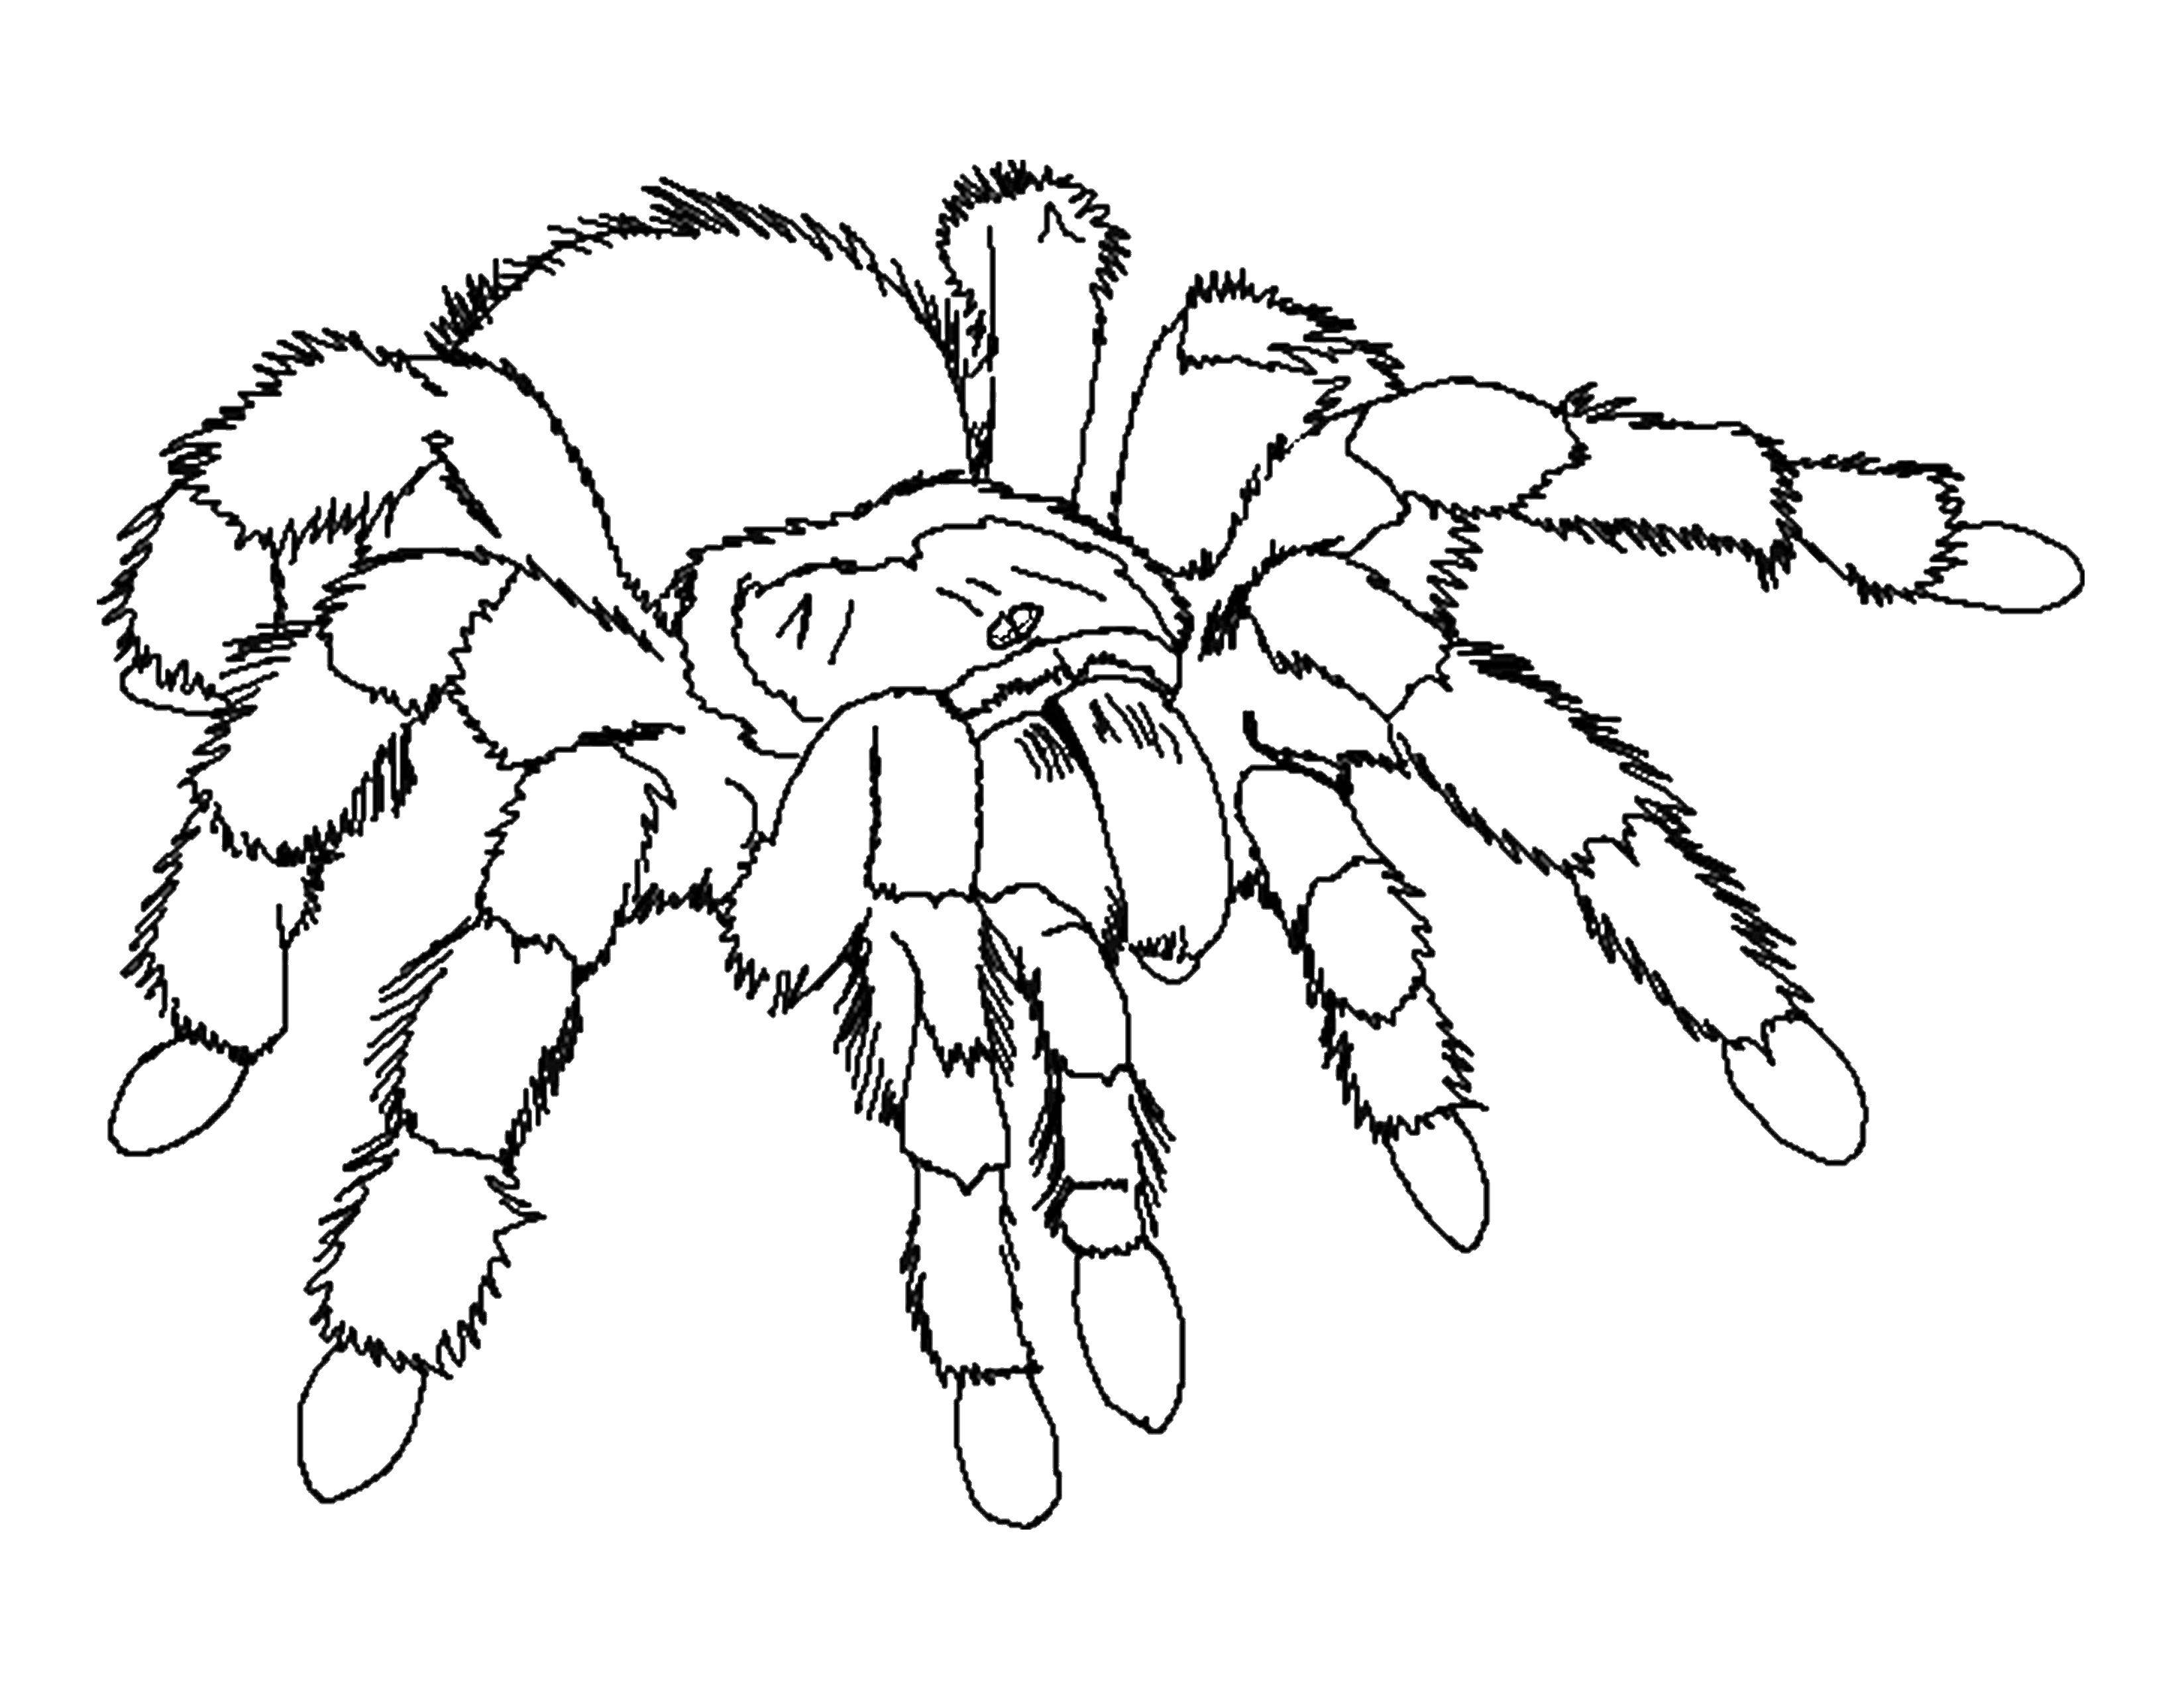 Coloring Tarantula. Category spiders. Tags:  tarantula.